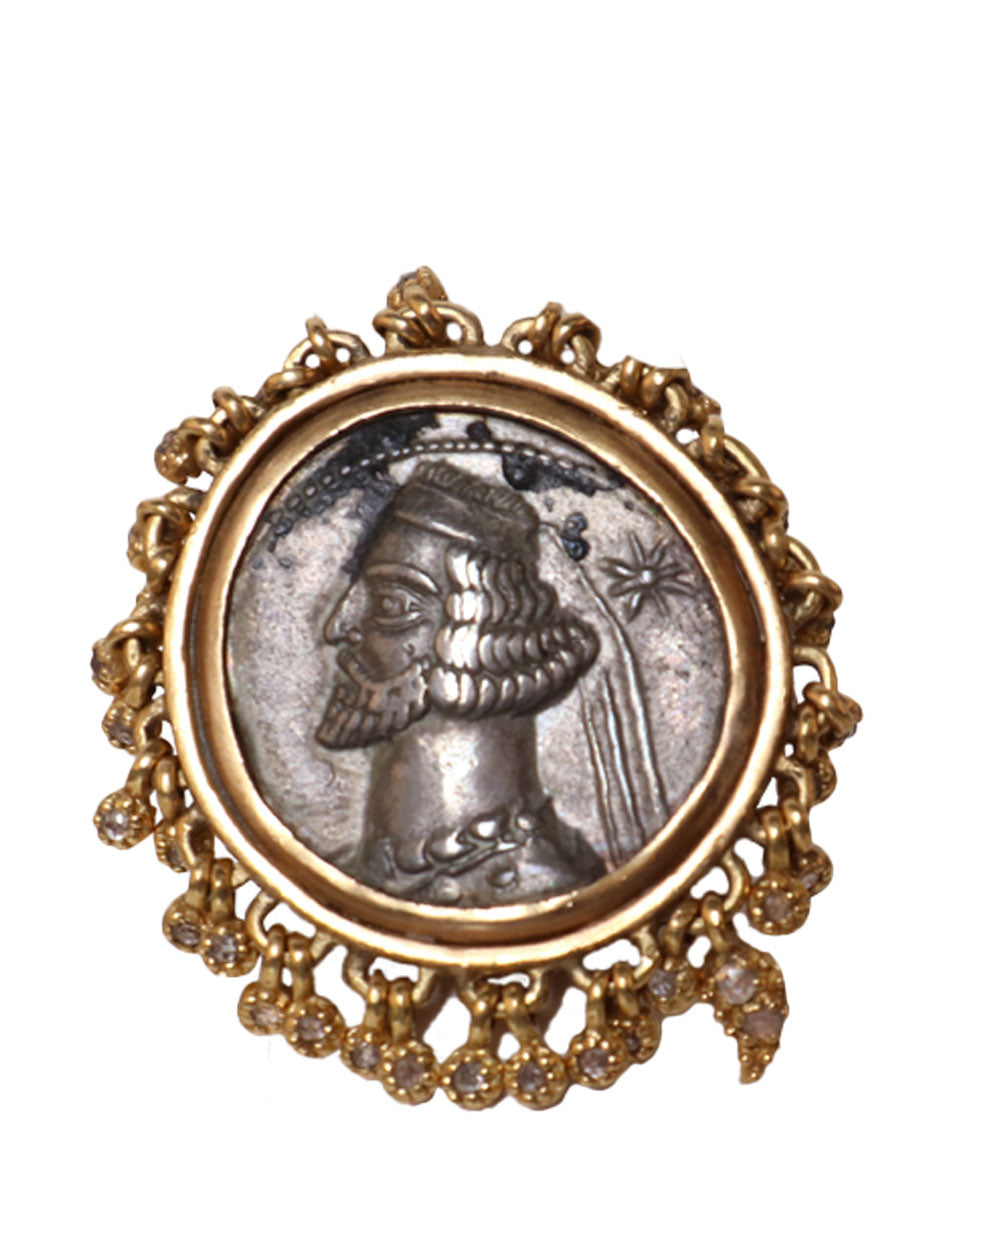 Parthian Coin Hanging Diamond Ring